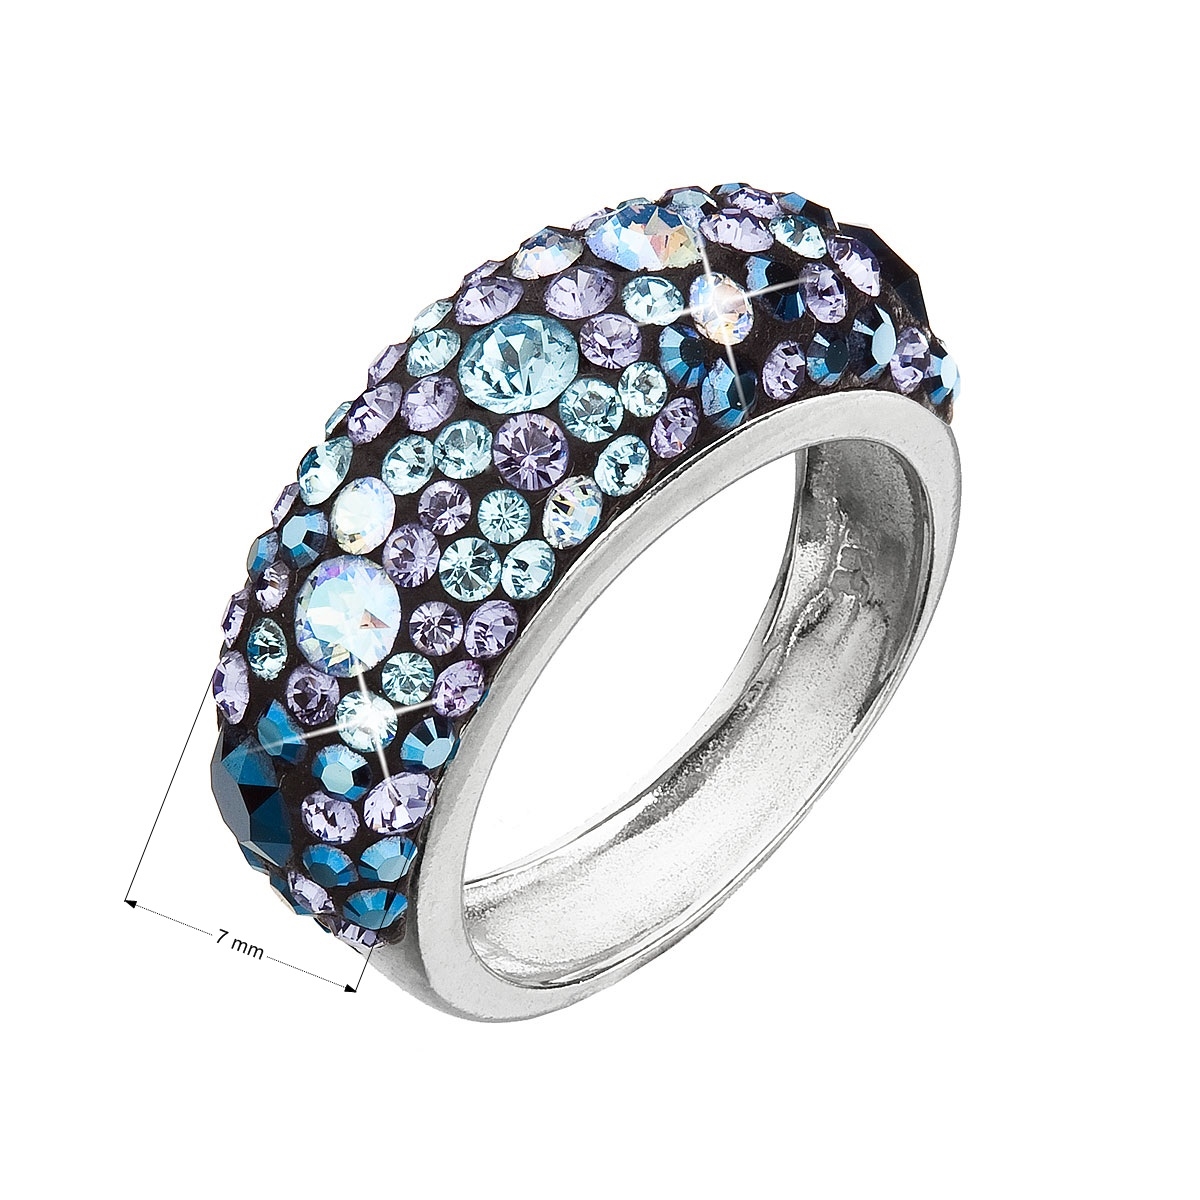 Strieborný prsteň s kameňmi Crystals from Swarovski ® Blue Style,